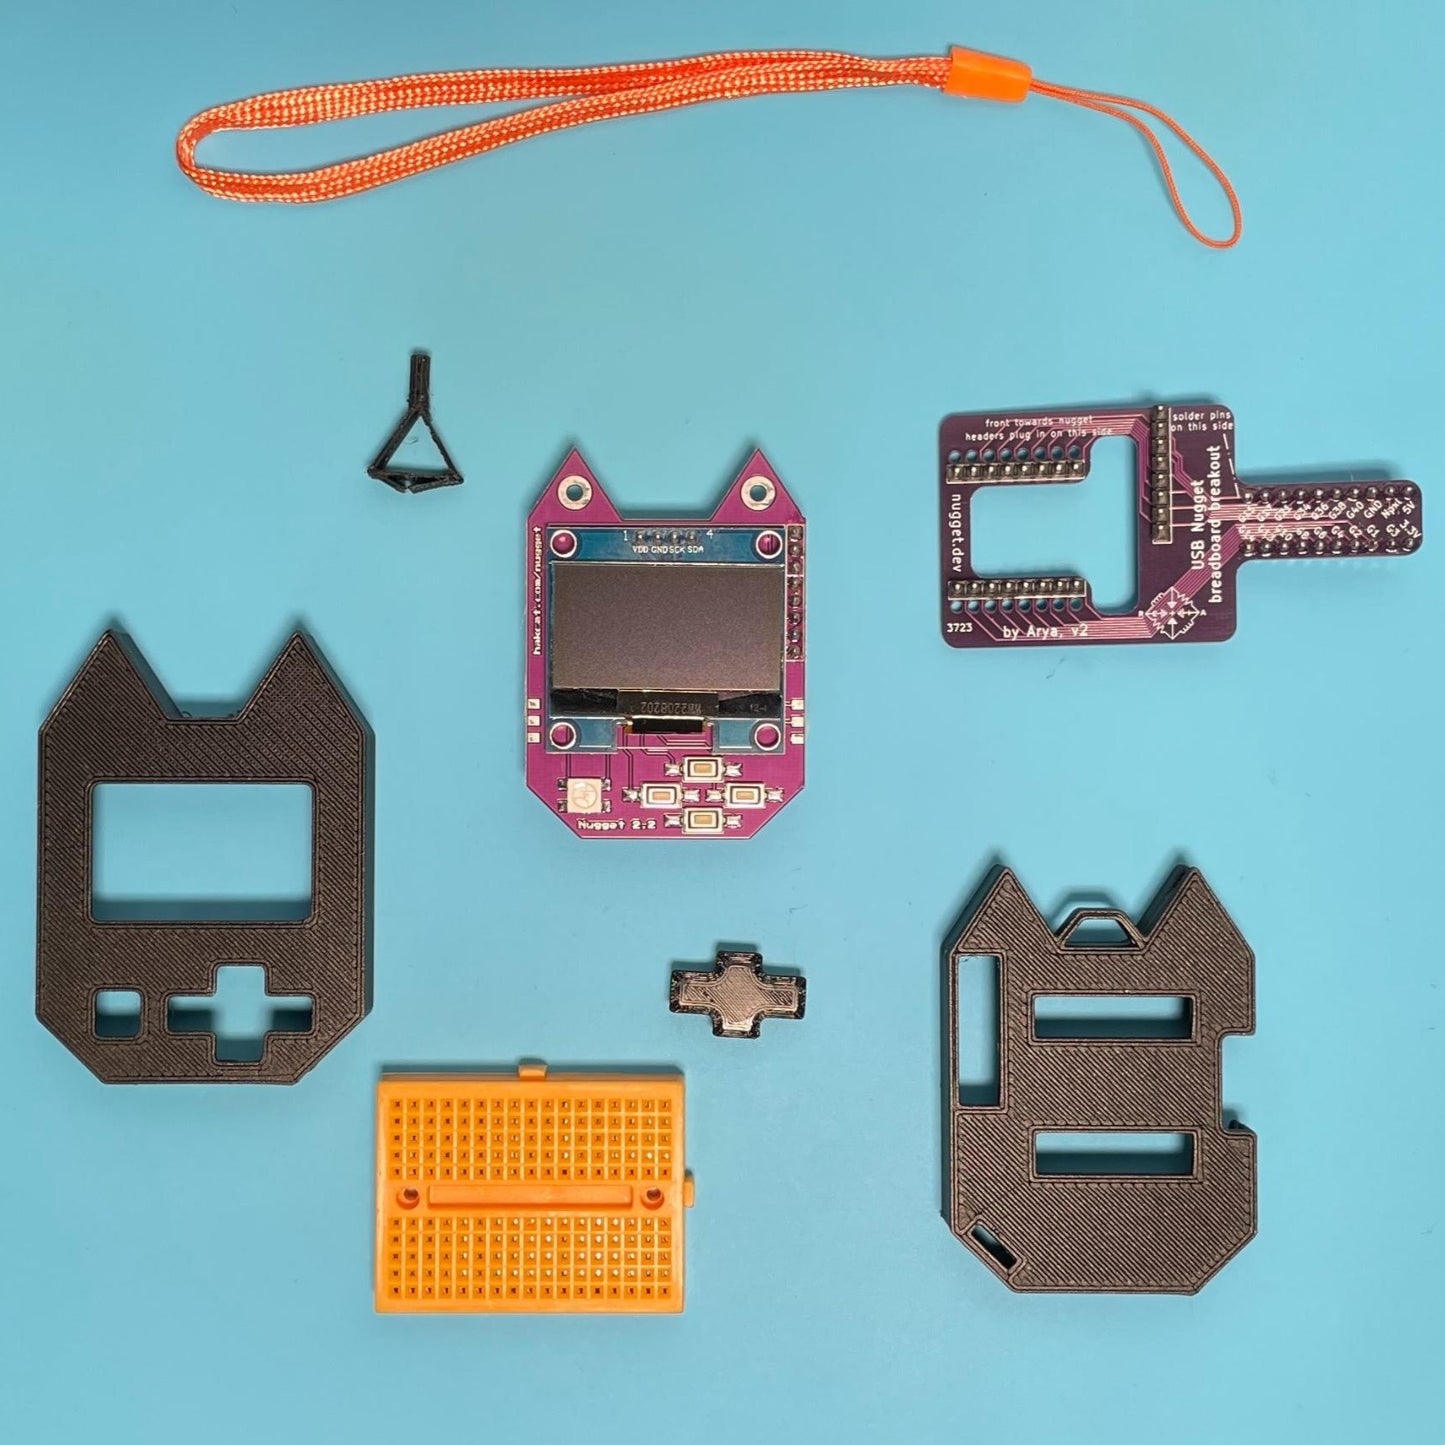 Beginner Hardware Hacker's Gift Kit